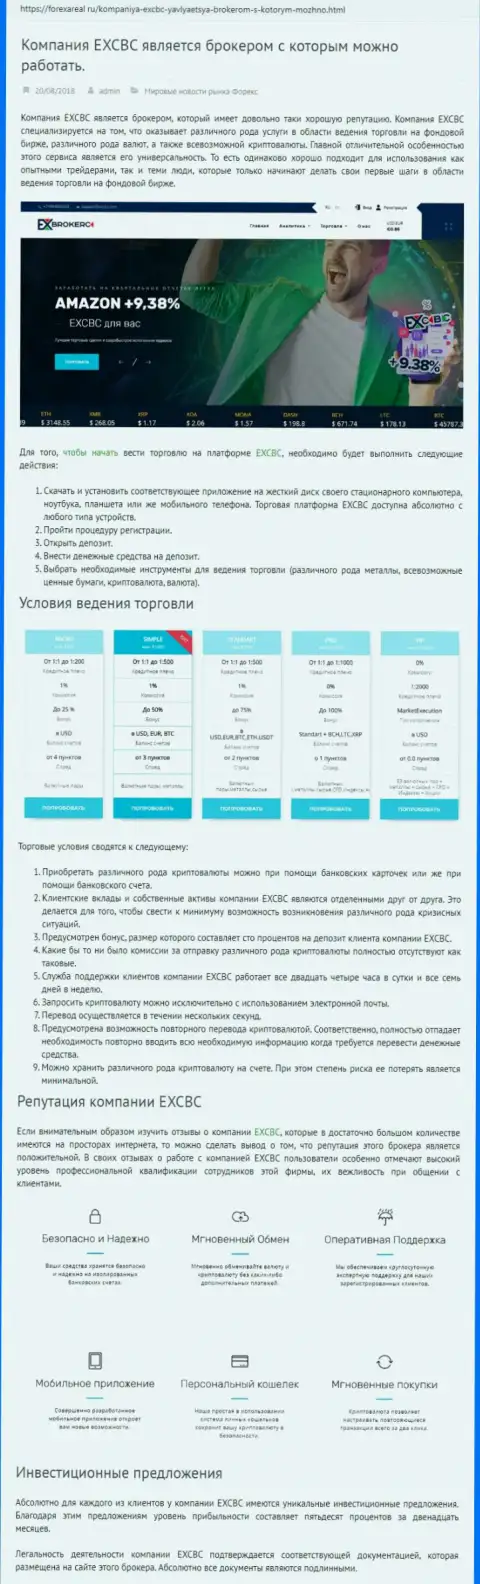 Веб-сервис forexareal ru представил обзор ФОРЕКС компании EXBrokerc